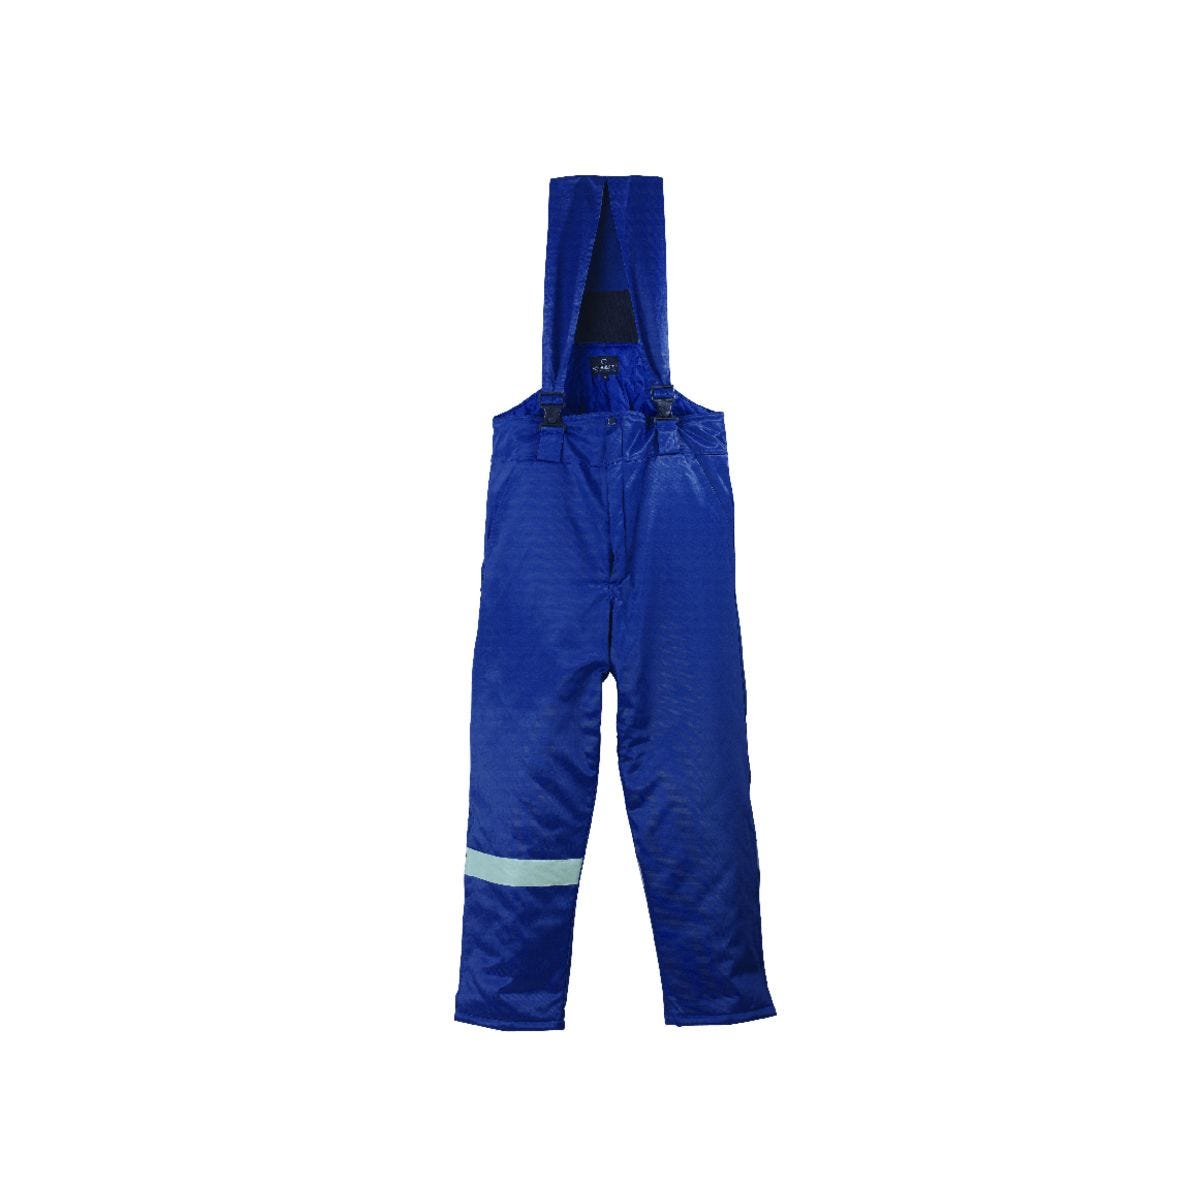 Pantalon BEAVER bleu - COVERGUARD - Taille 3XL 0